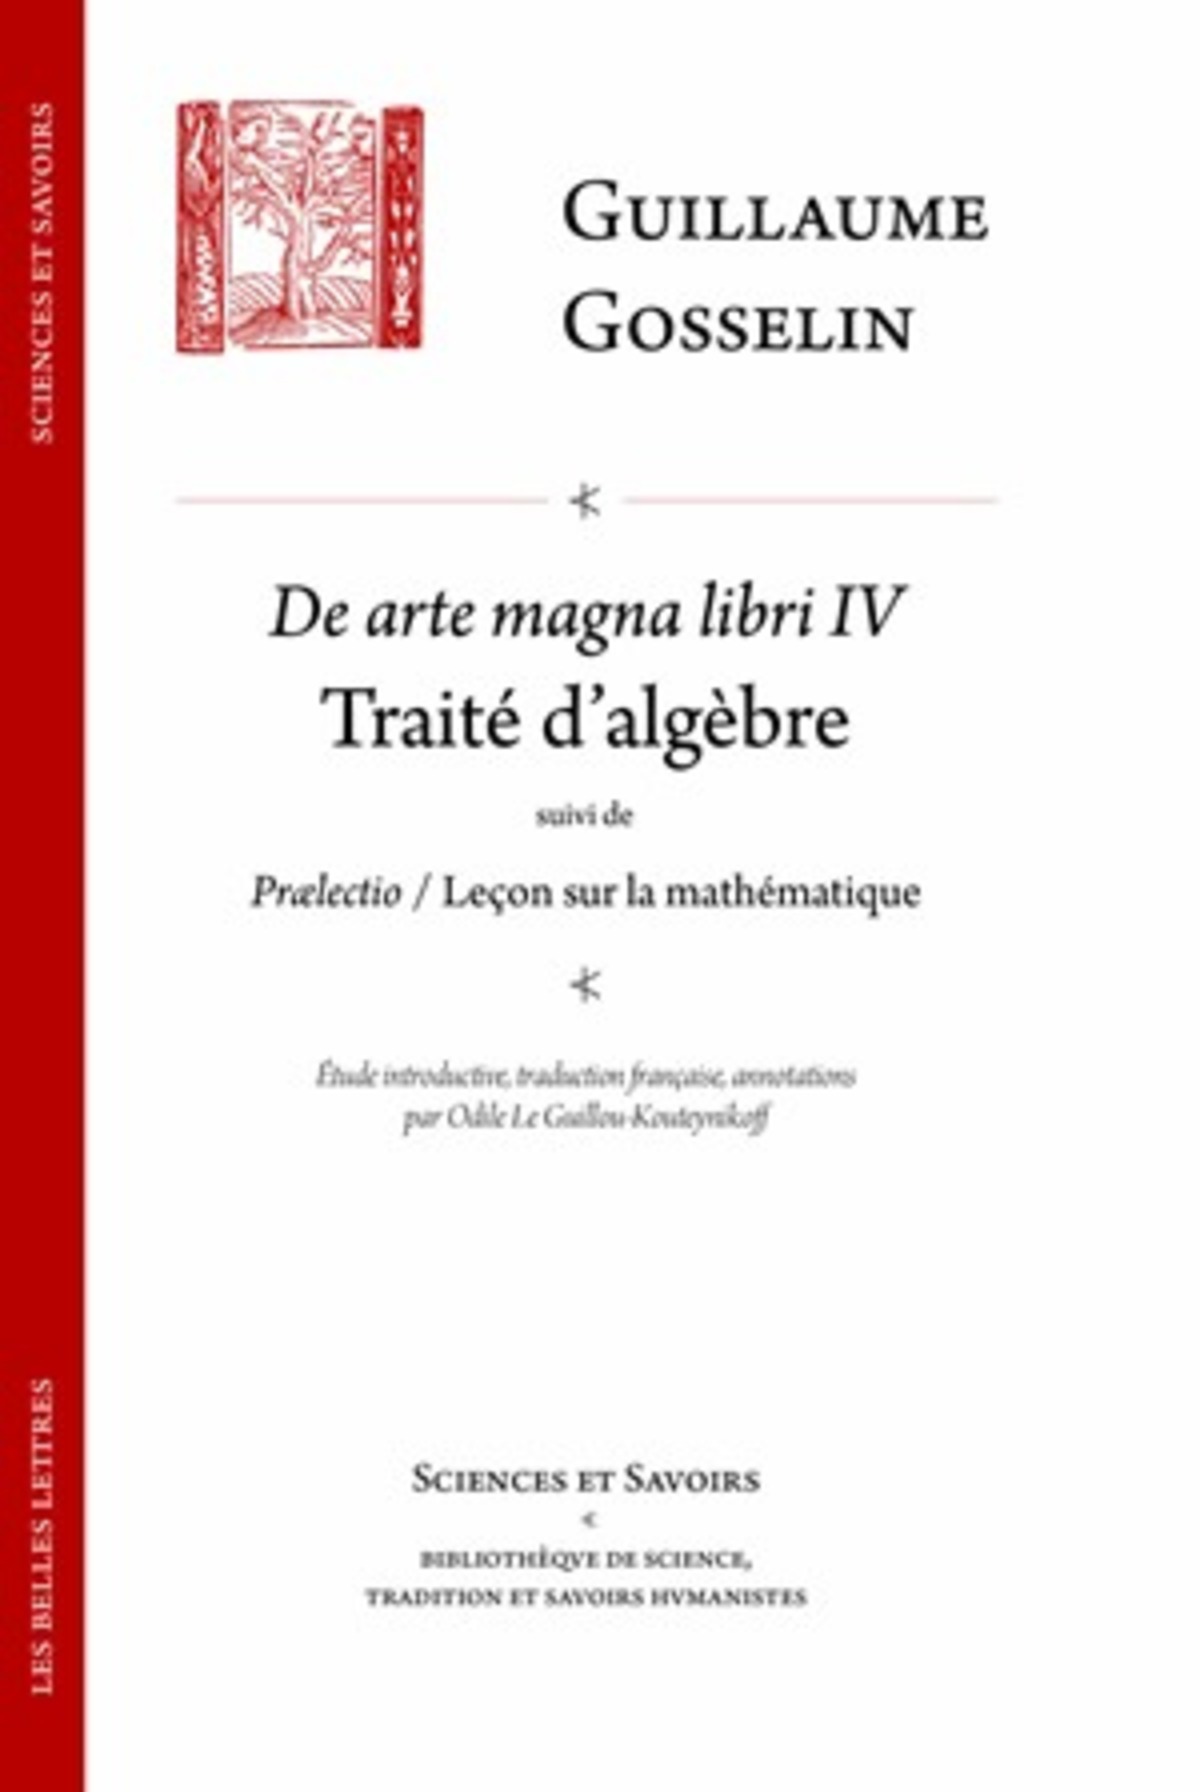 De arte magna libri IV / Traité d'algèbre